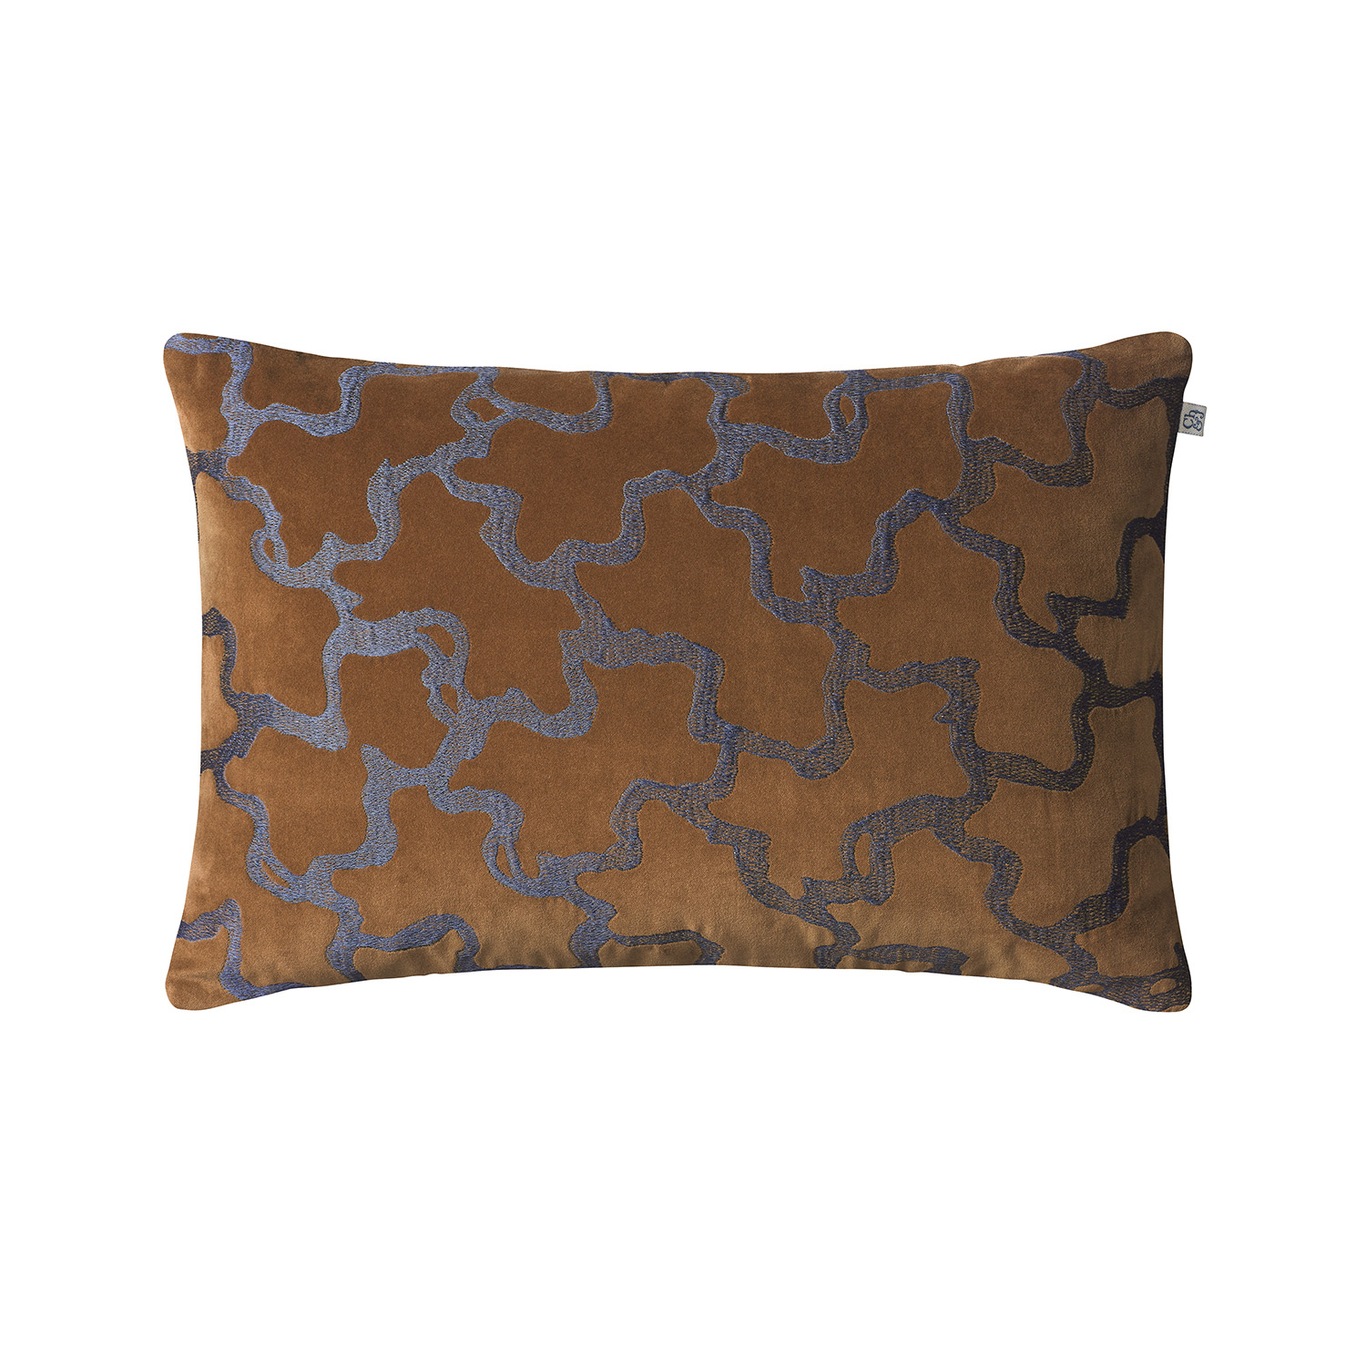 Chand Cushion Cover 40x60 cm, Cognac / Sea Blue